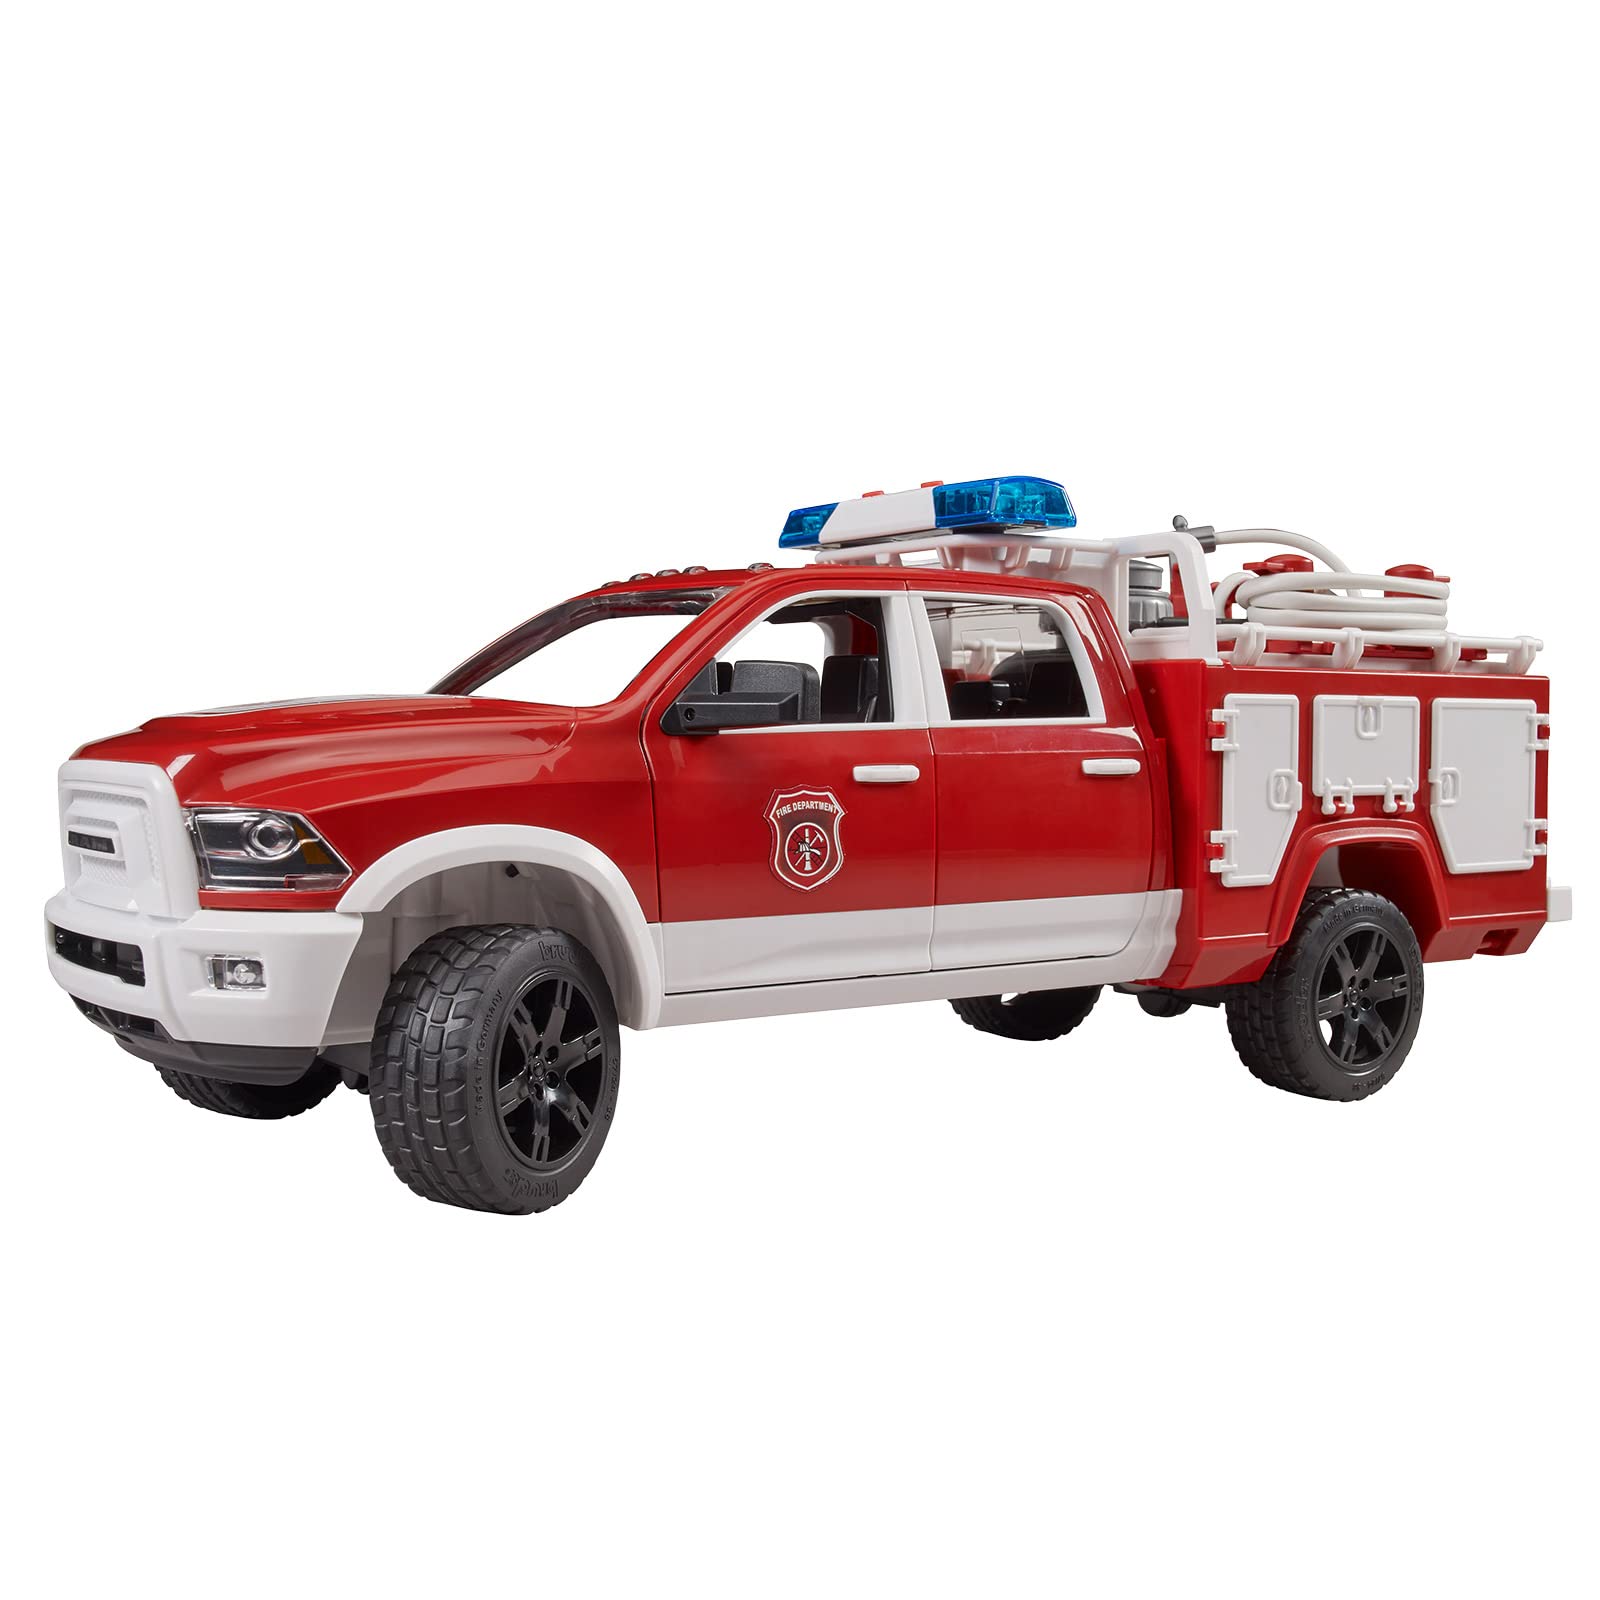 NEW RAM Fire Rescue Truck w